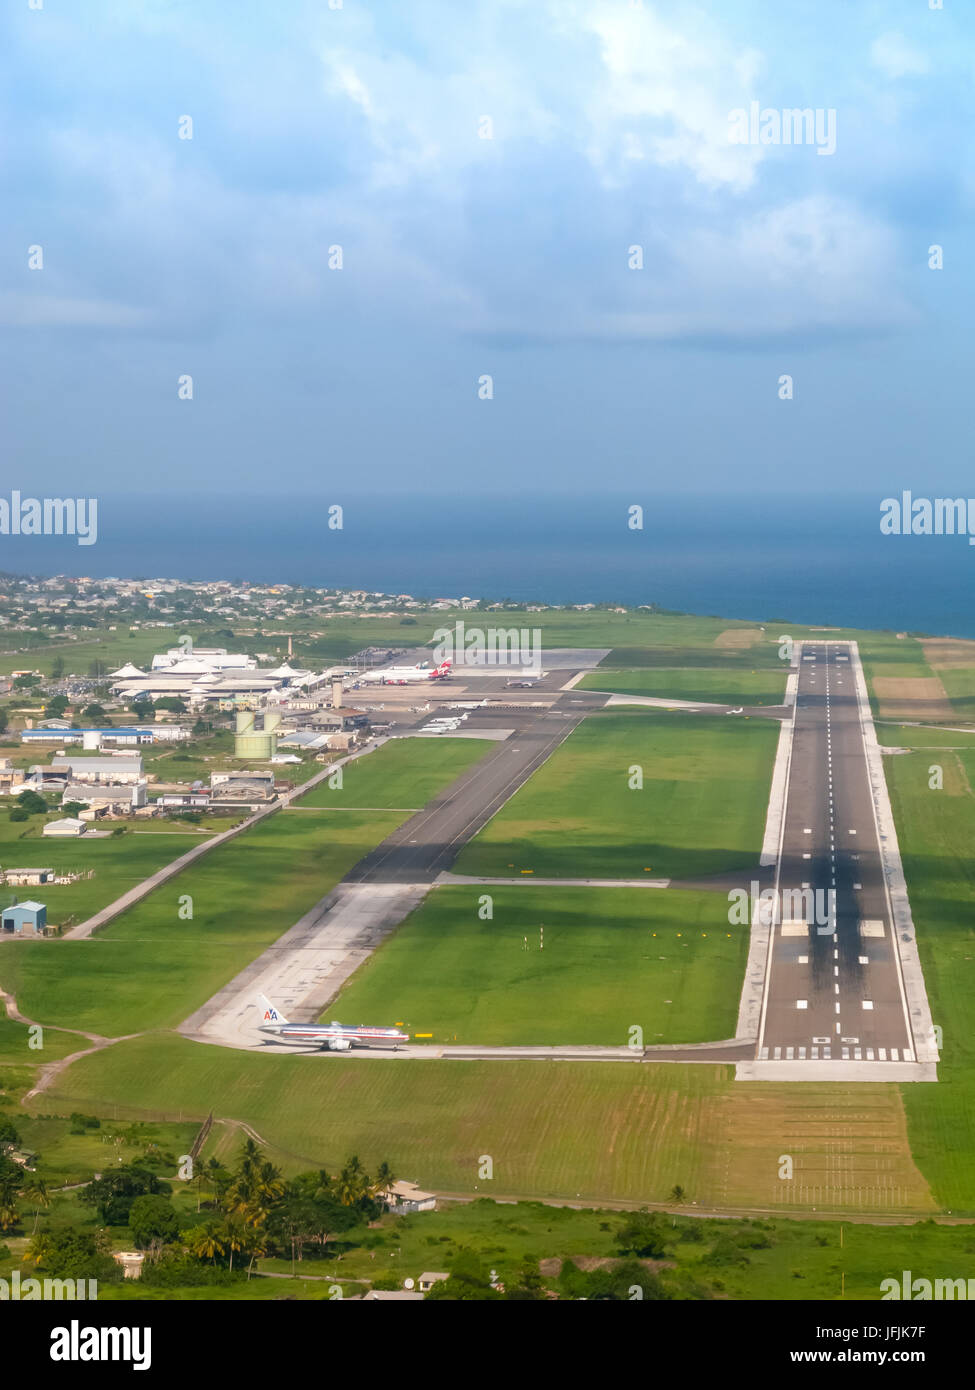 The Barbados runway approach, Barbados Grantley Adams International Airport (GAIA) Airport, Barbados, West Indies Stock Photo